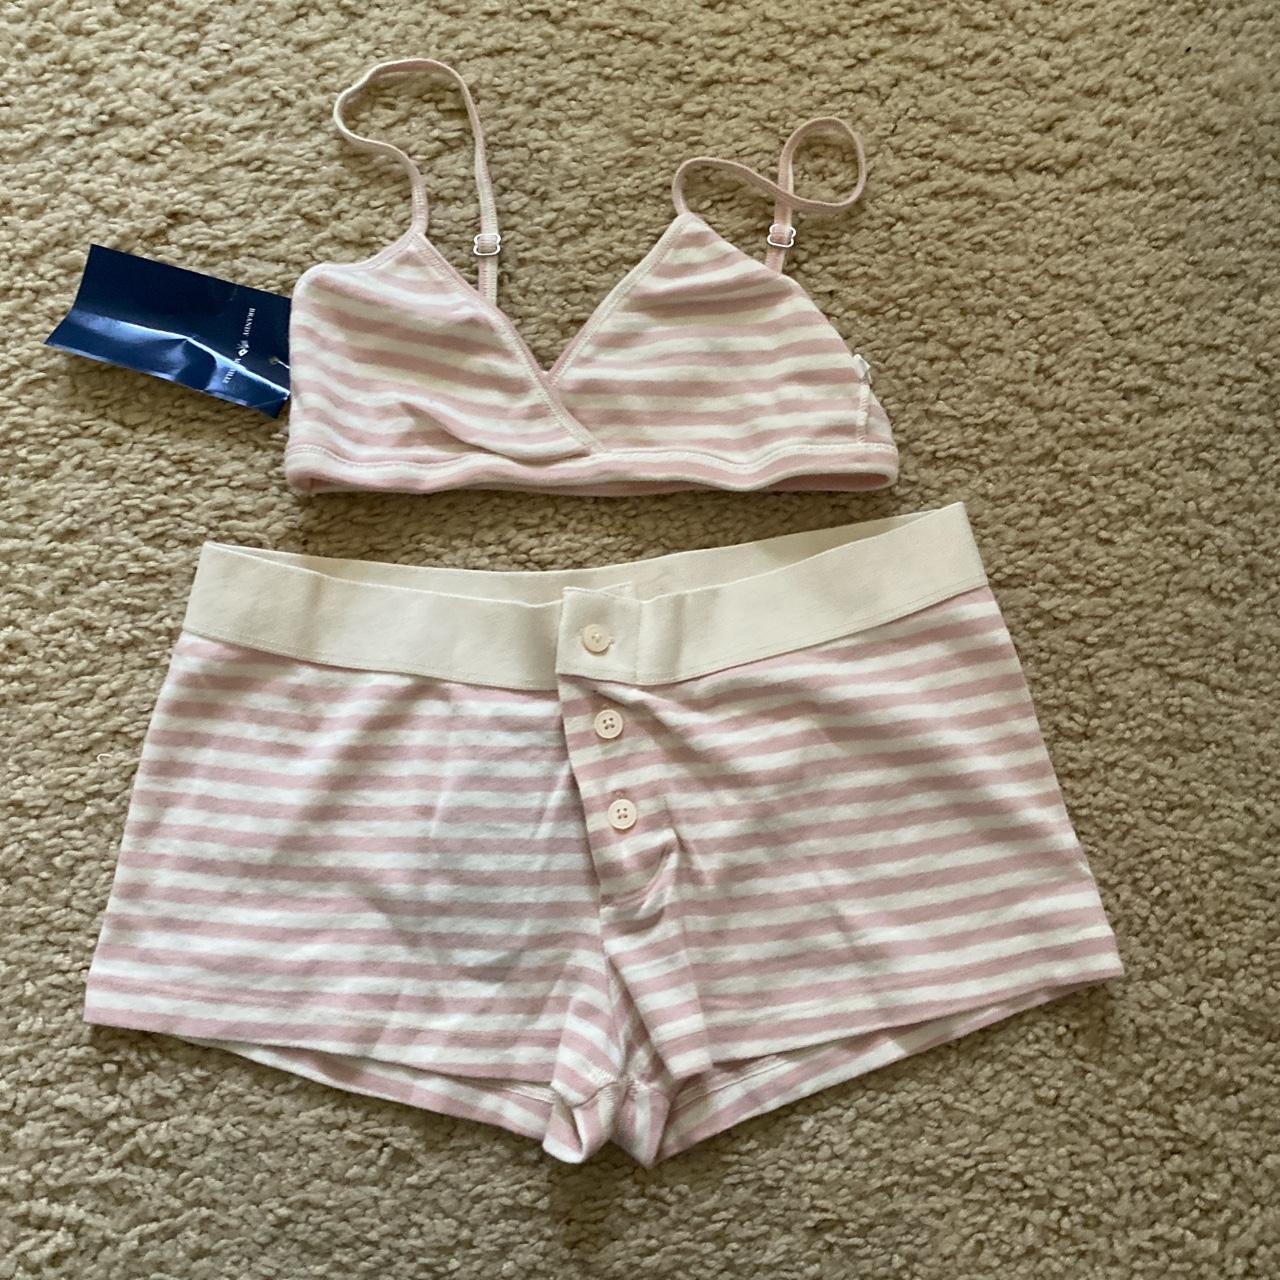 Brandy melville striped polina bra top/ boy shorts set - Depop